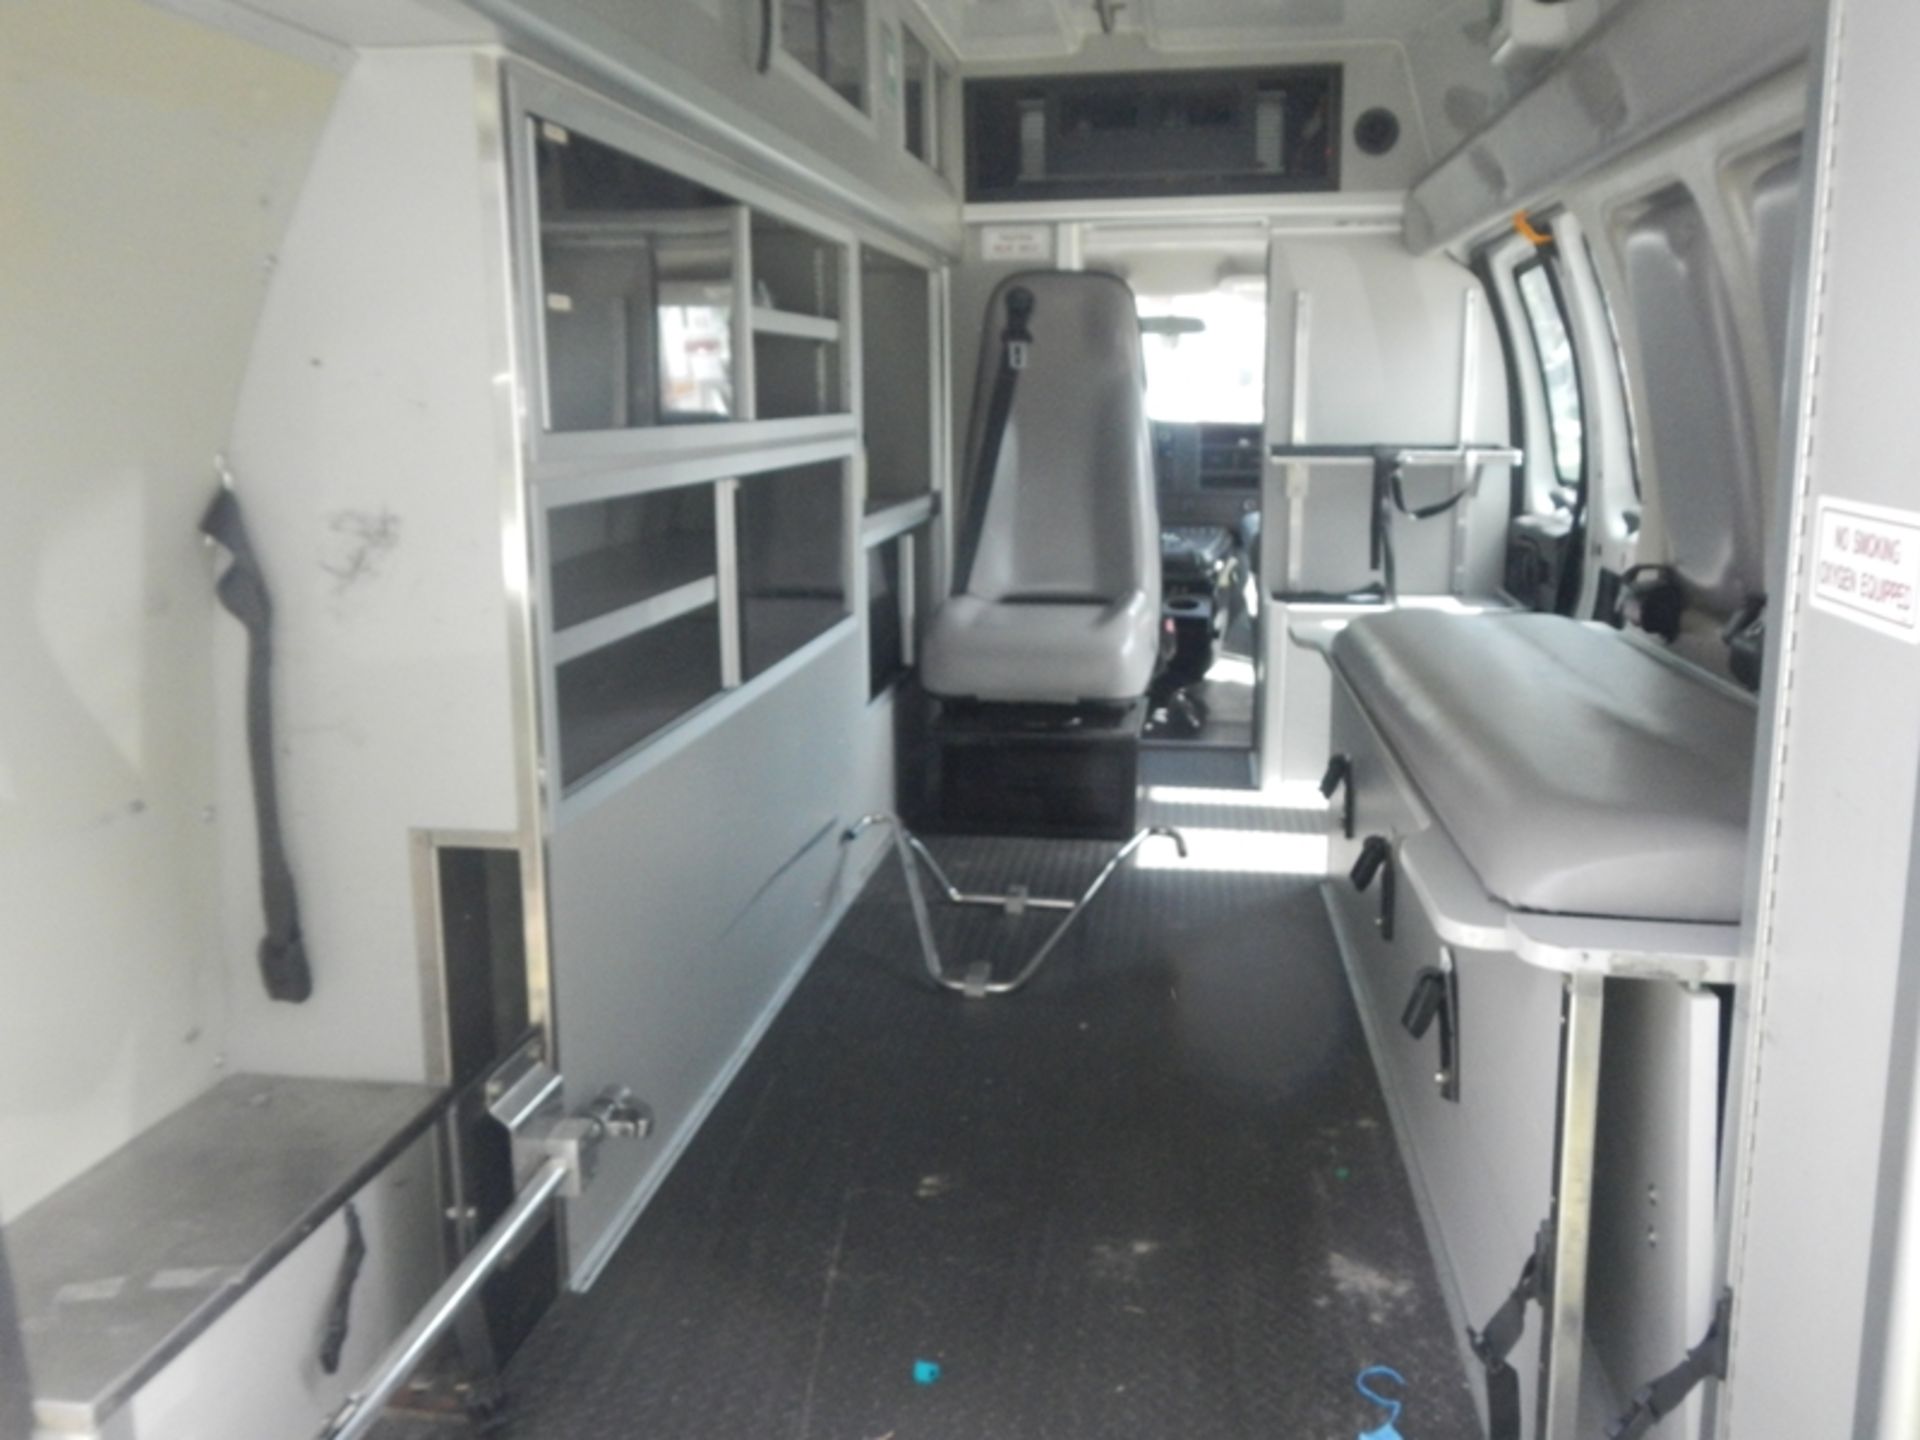 2009 CHEVROLET G-3500 Type II Ambulance dsl 199,883 miles - 1GBHG396391152924 - Image 6 of 6